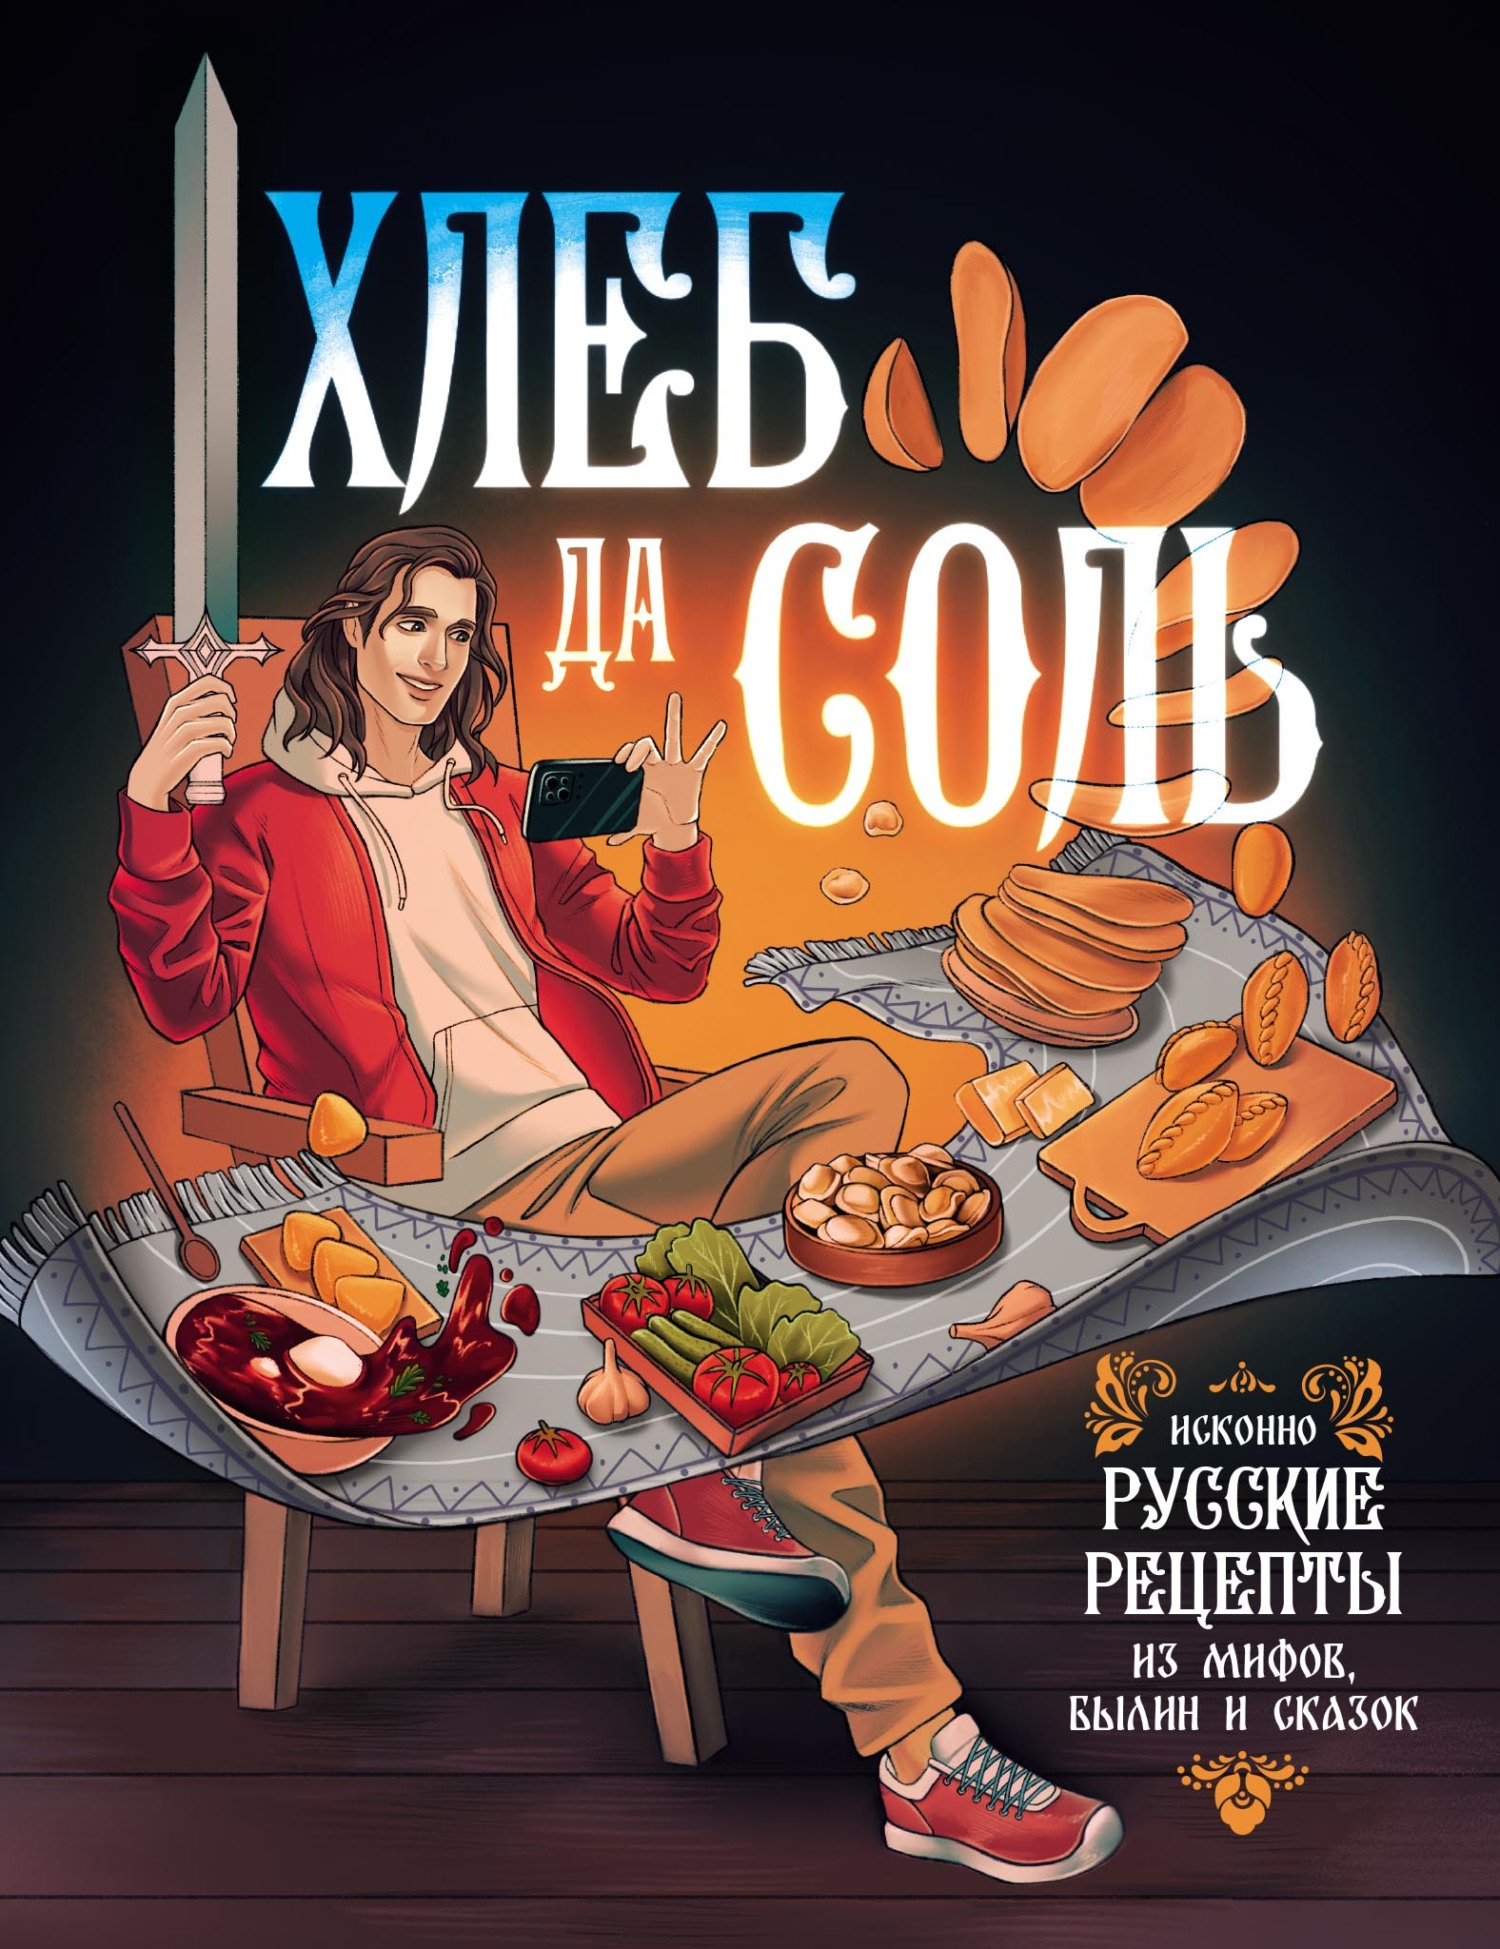 Книга рецептов по сериалу Друзья выходит 22 сентября - узнайте все о любимых блюдах персонажей